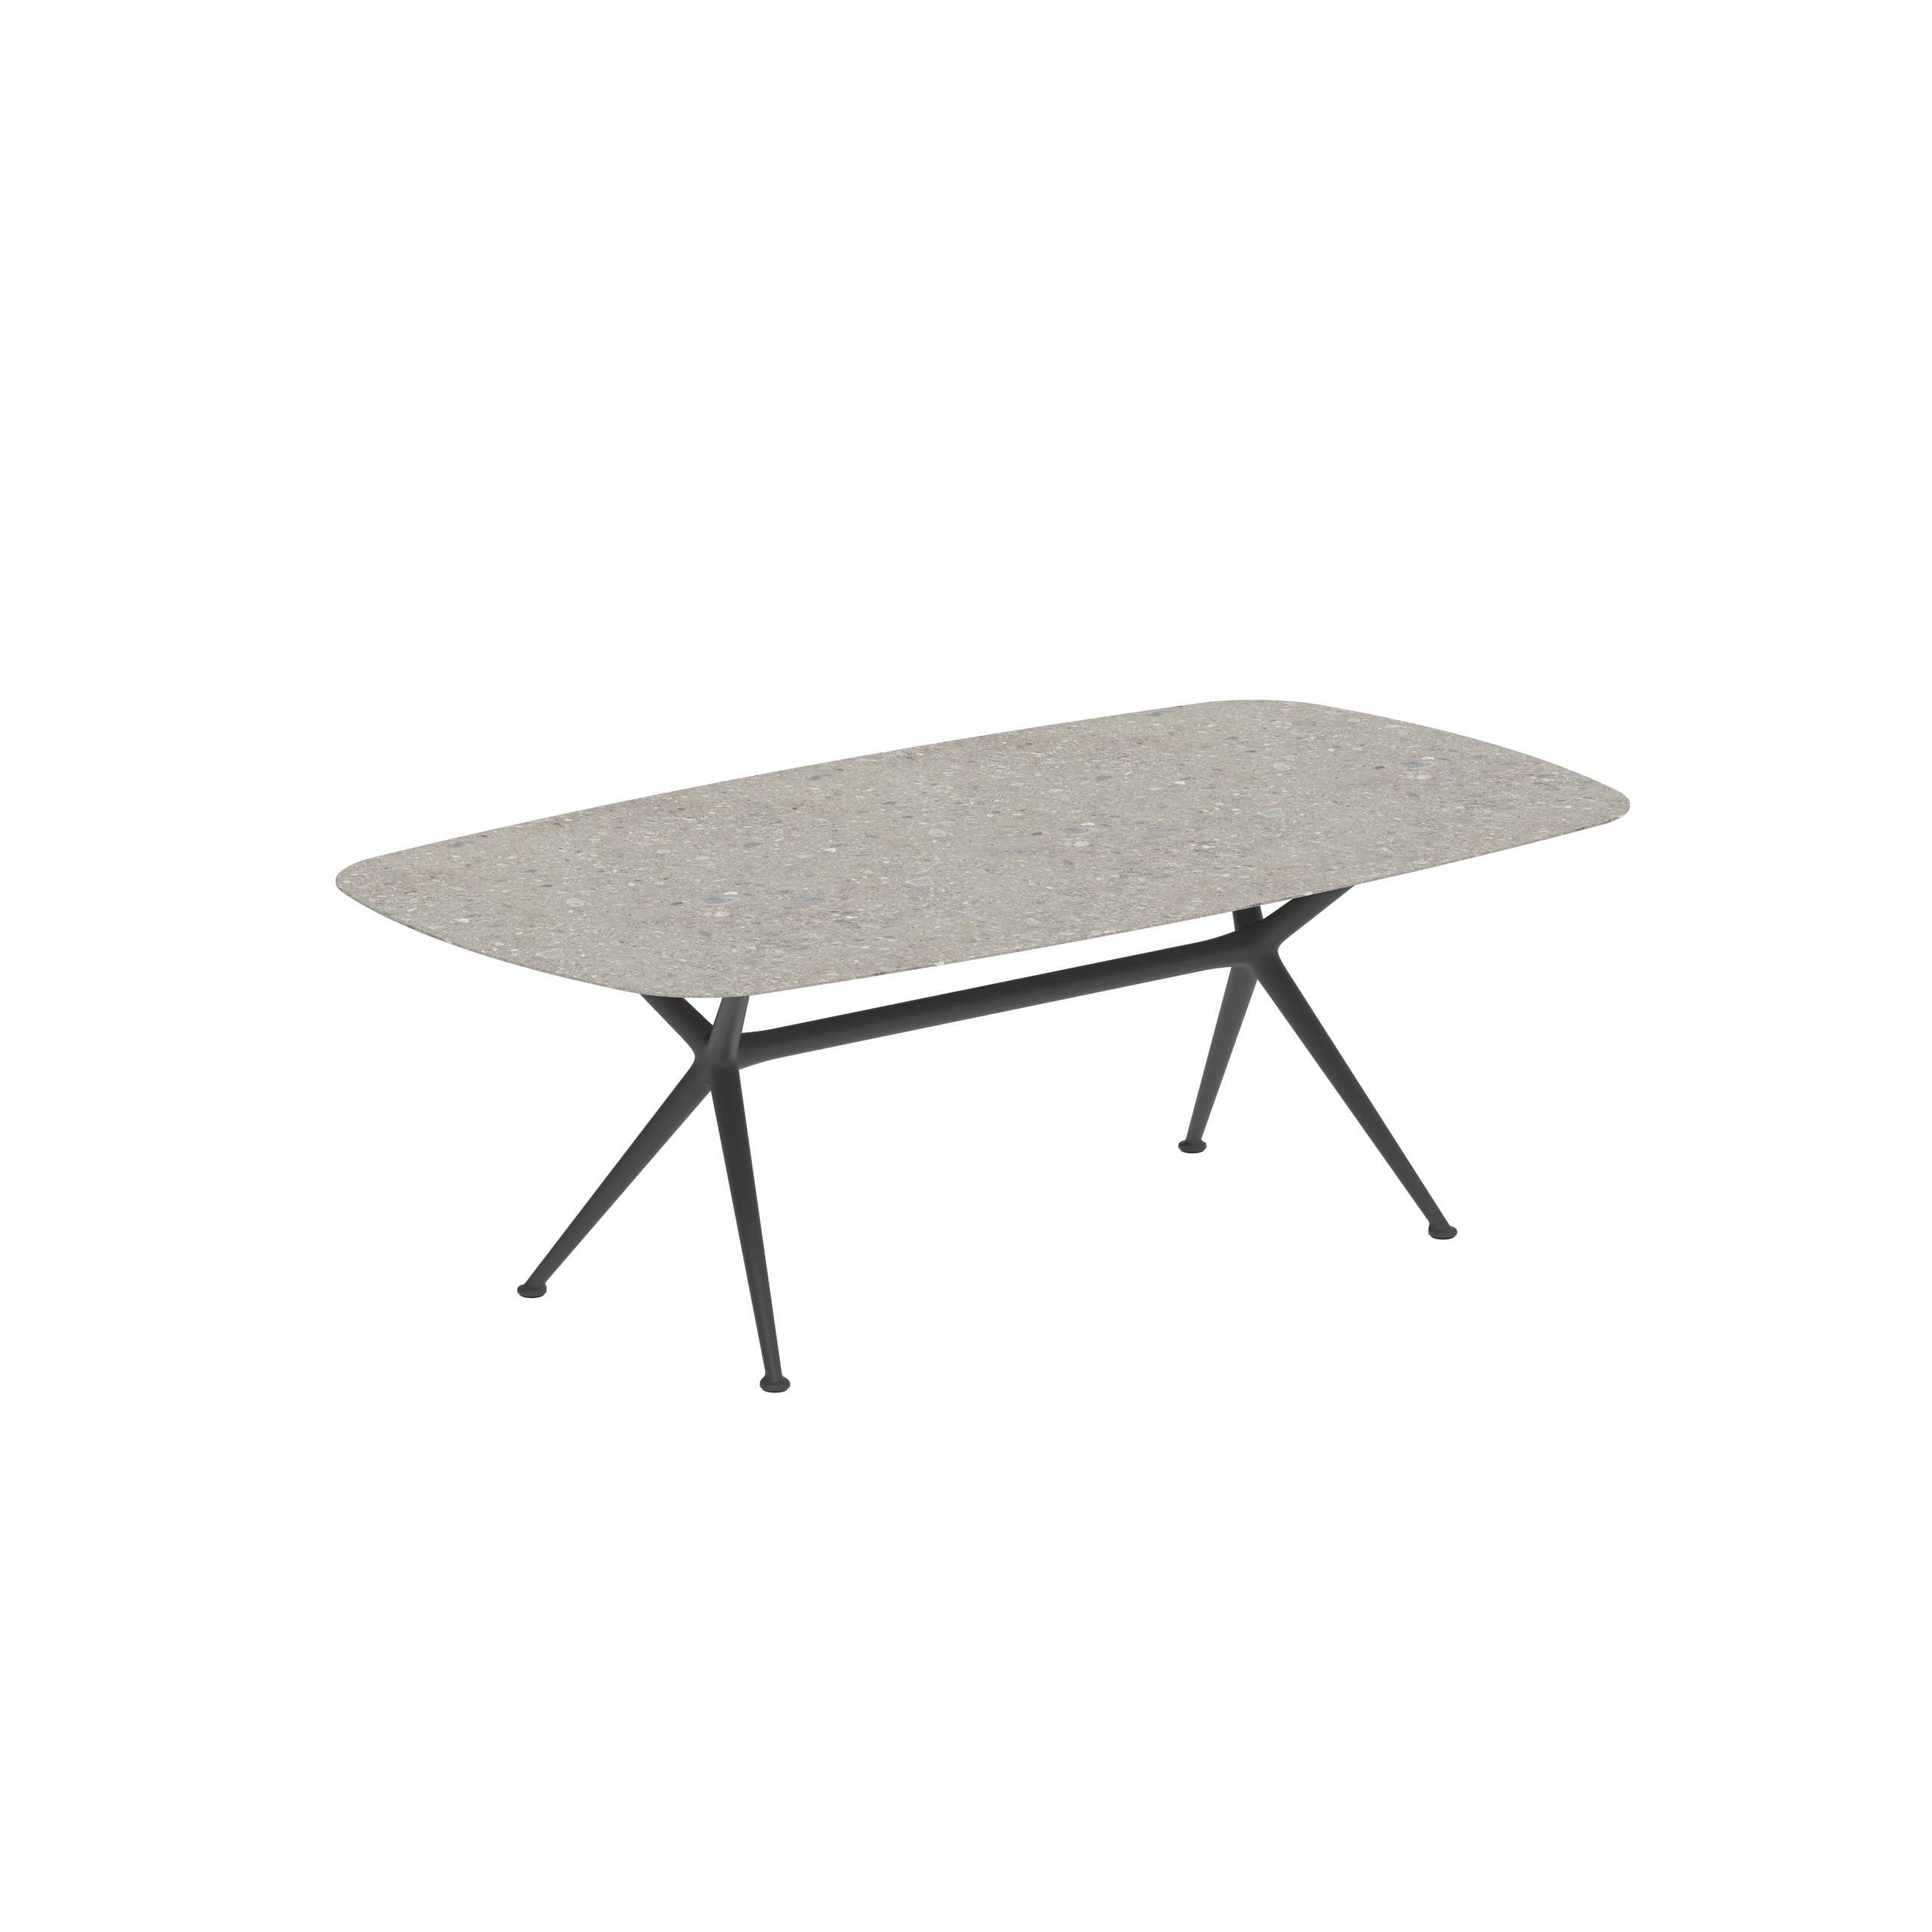 Exes Table 220x120cm Alu Legs Anthracite - Table Top Ceramic Ceppo Dolomitica